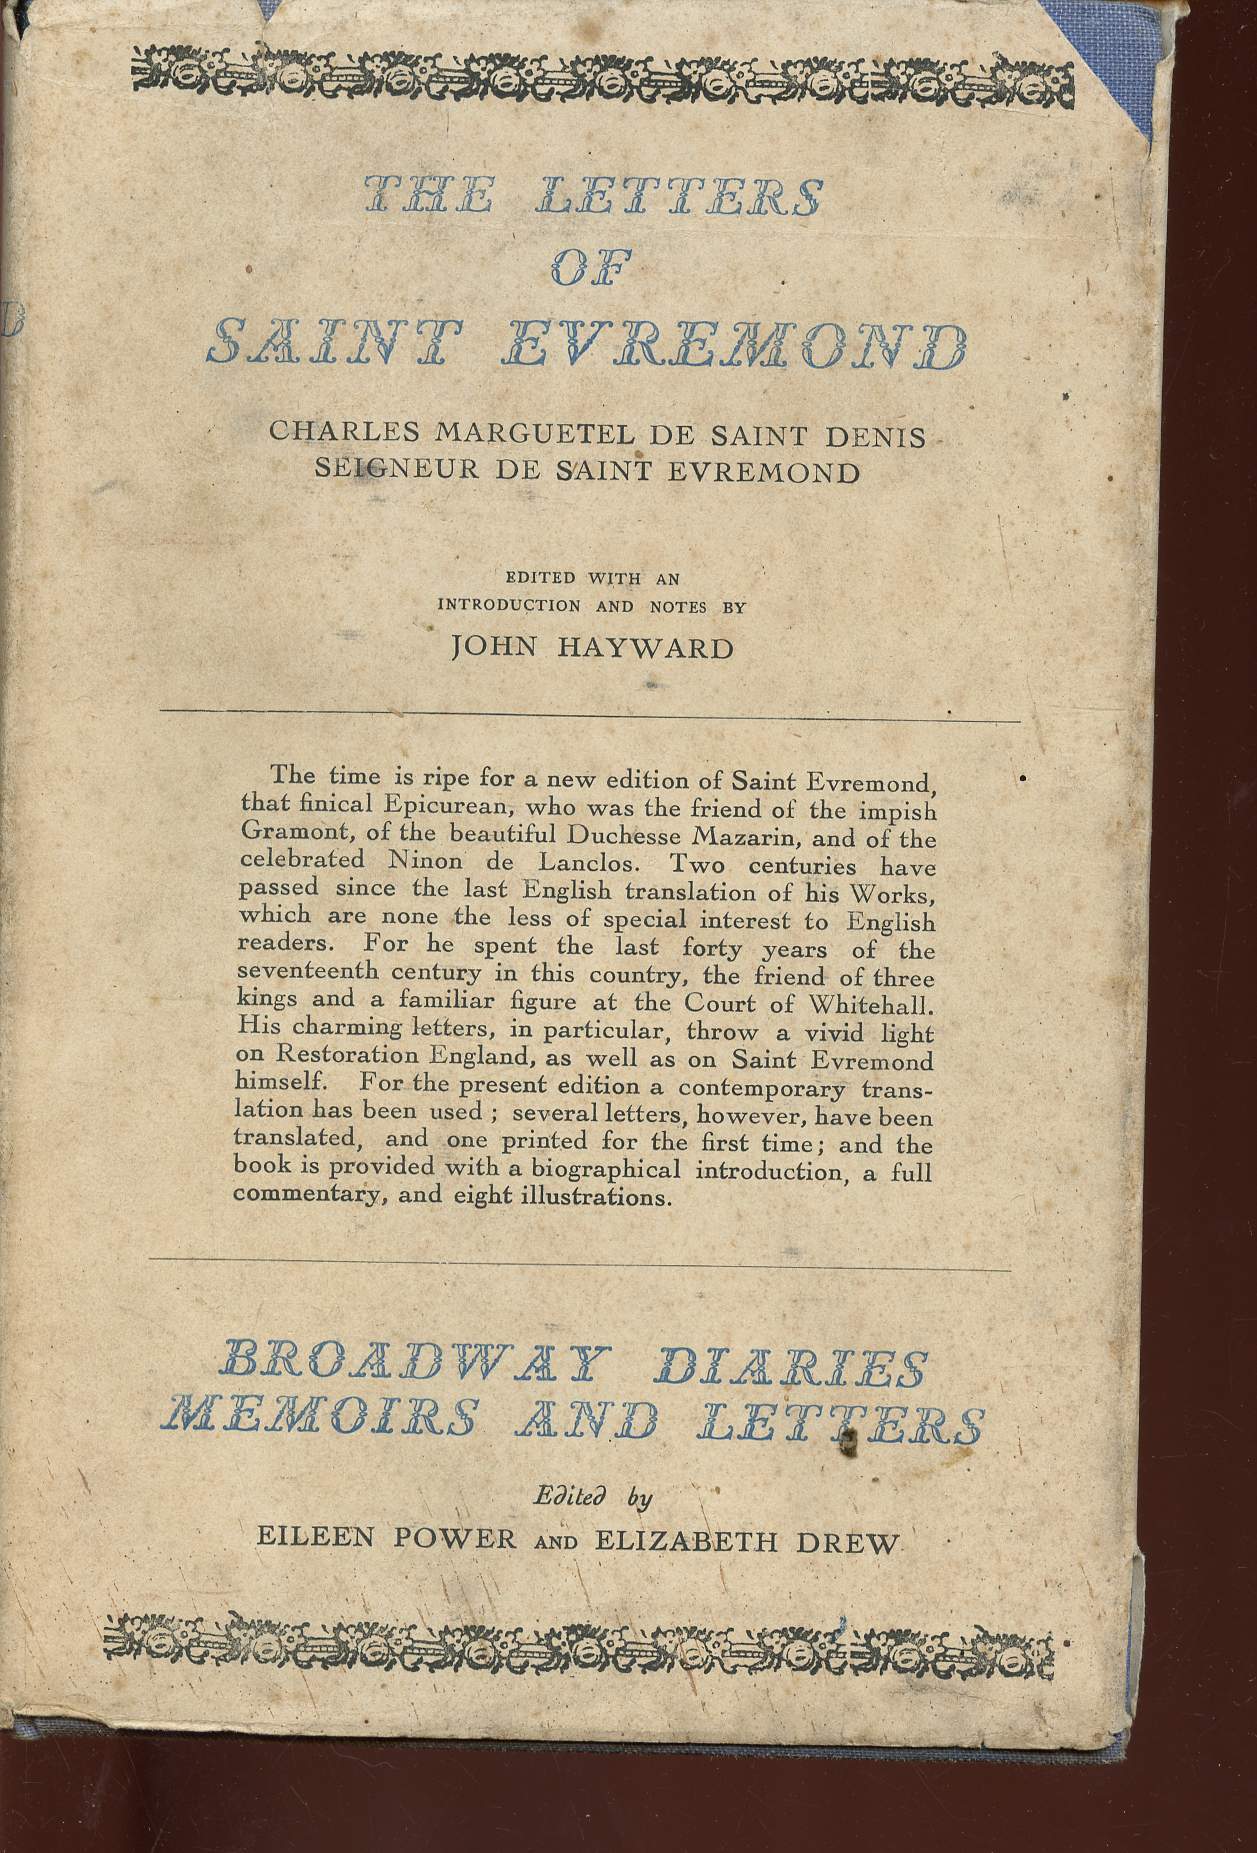 The letters of Saint Evremond